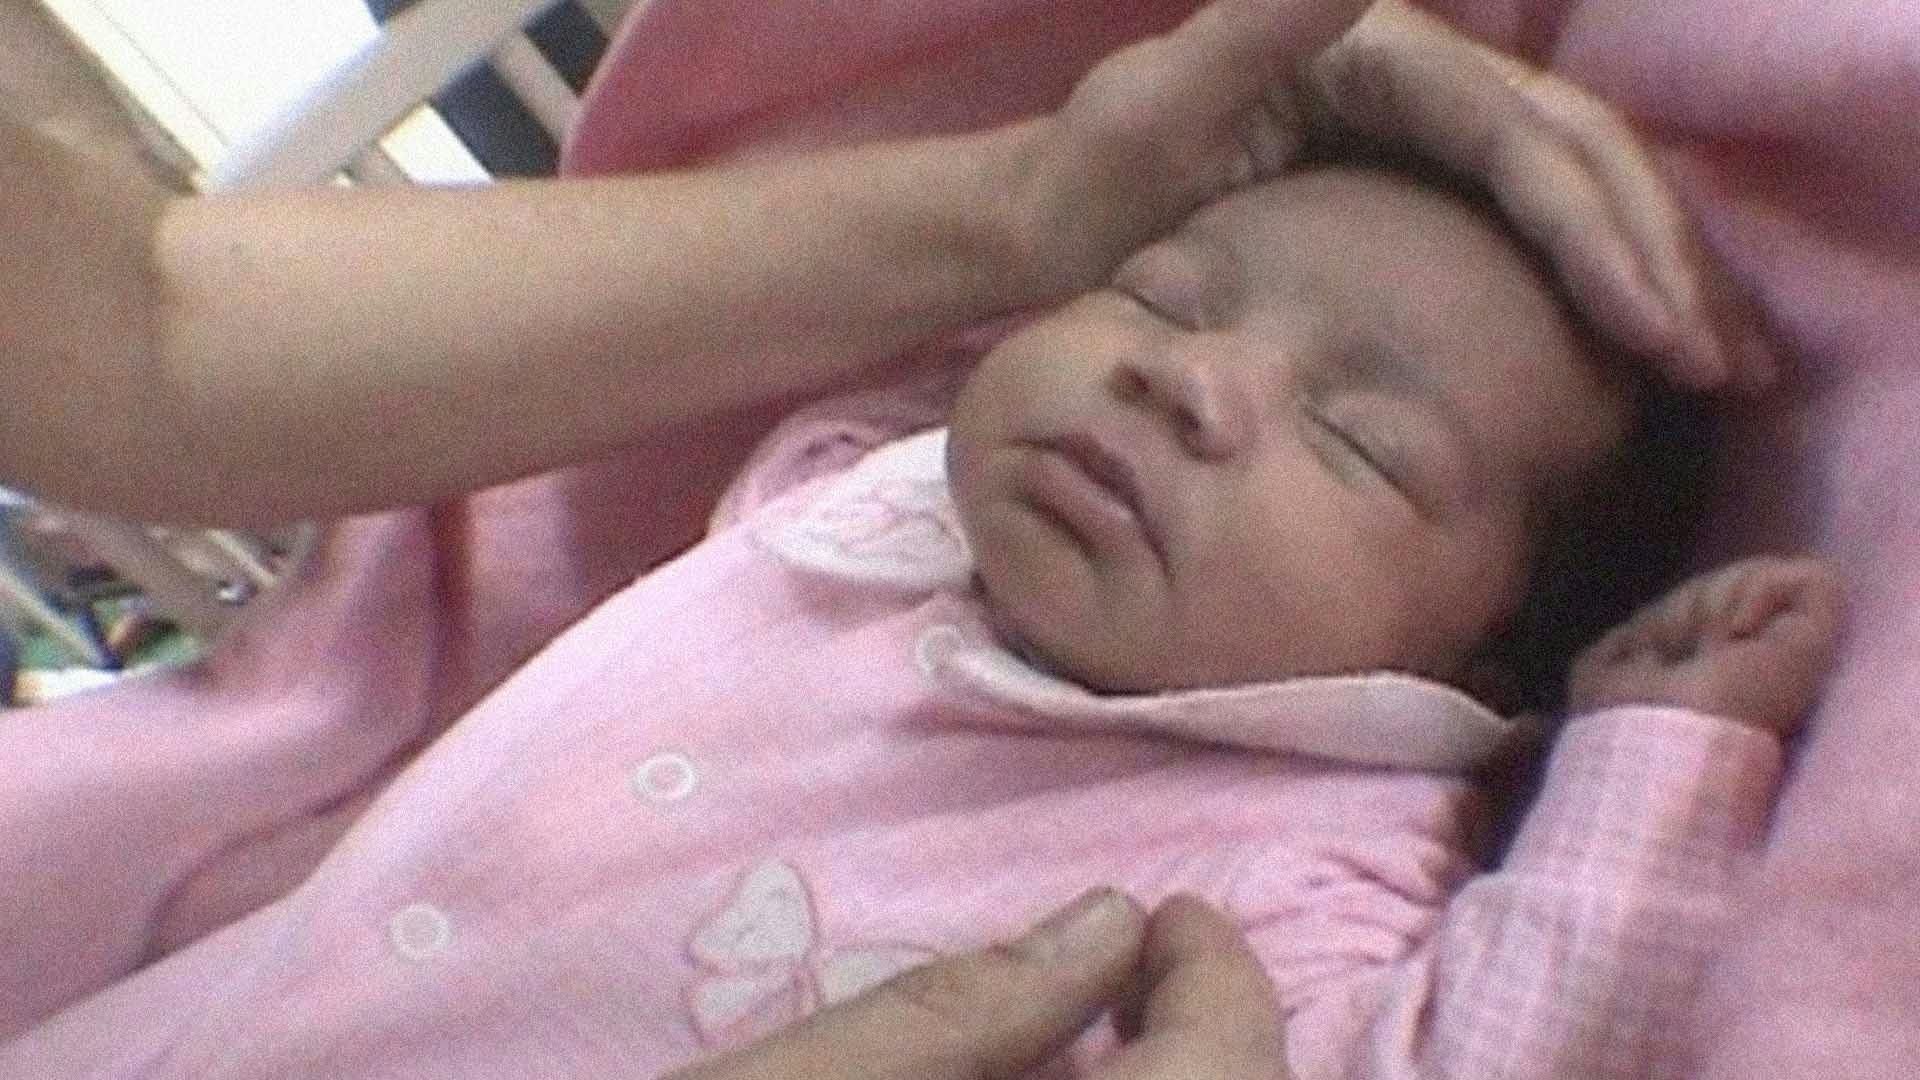 Um bebê recém-nascido com roupas rosas está dormindo. Uma mão está passando acariciando sua cabeça.